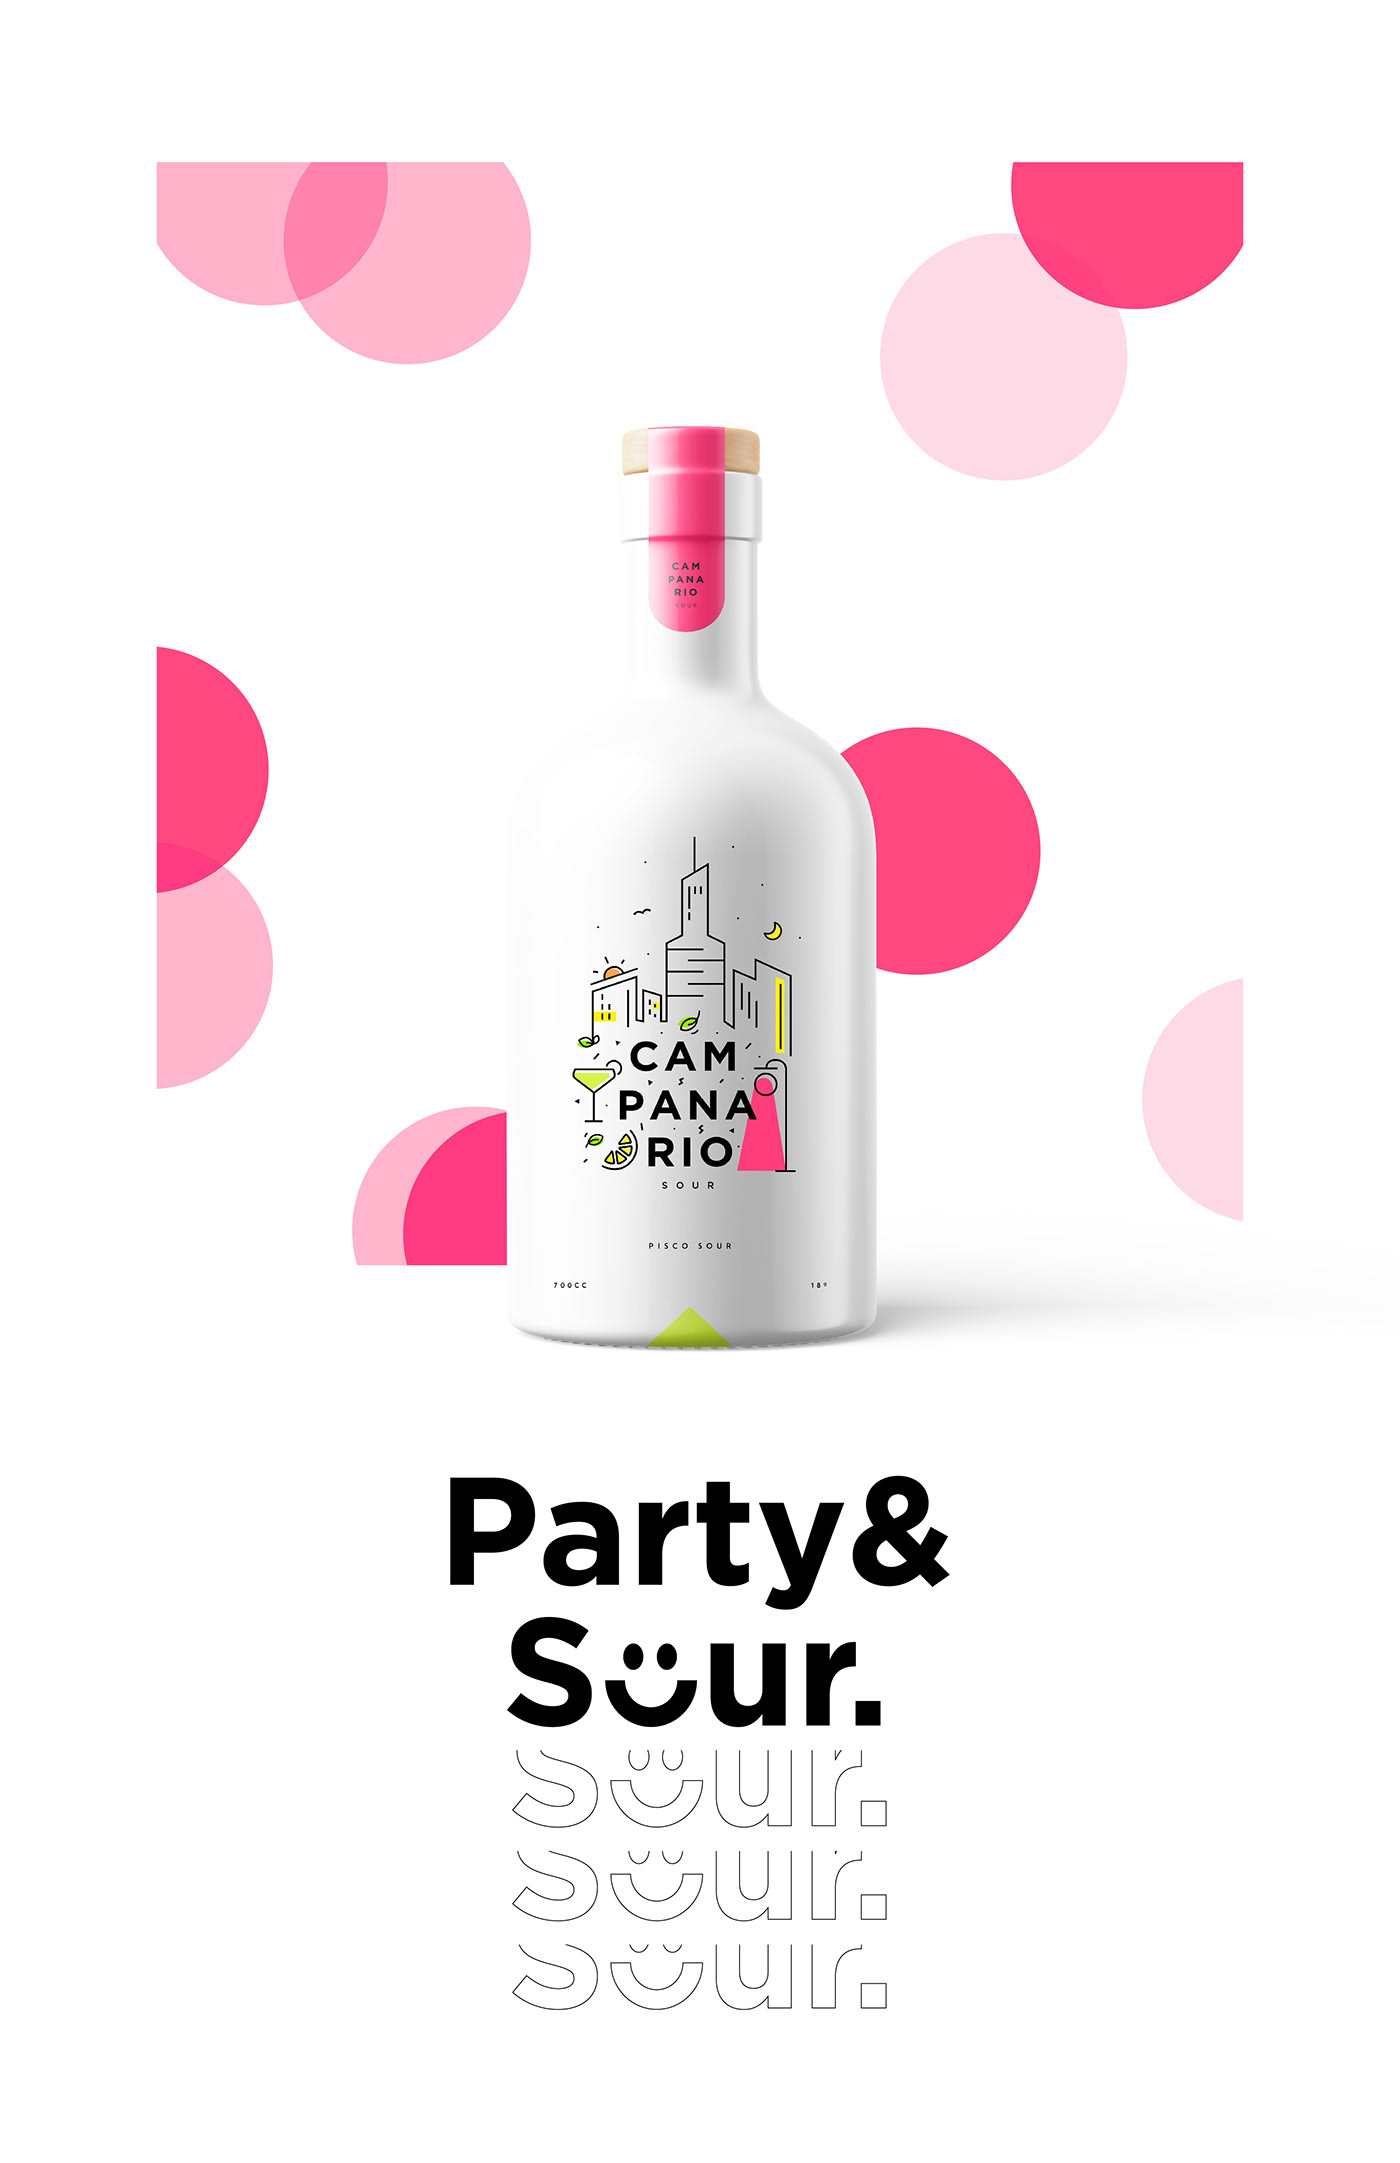 branding  ccu cocktail design Socialmedia sour